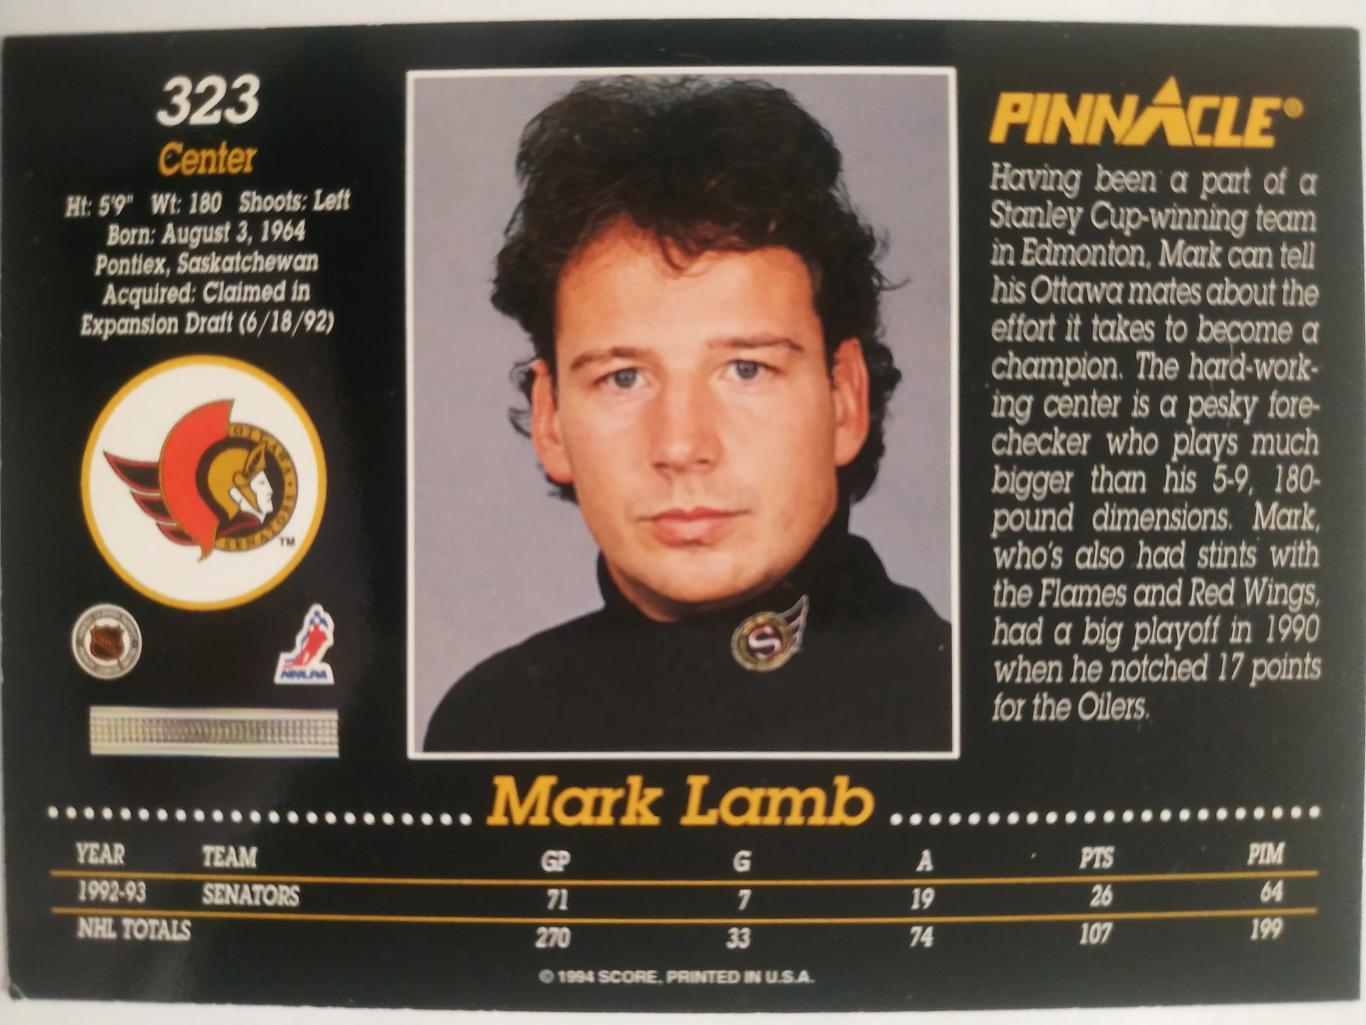 ХОККЕЙ КАРТОЧКА НХЛ PINNACLE 1993-94 NHL MARK LAMB OTTAWA SENATORS #323 1